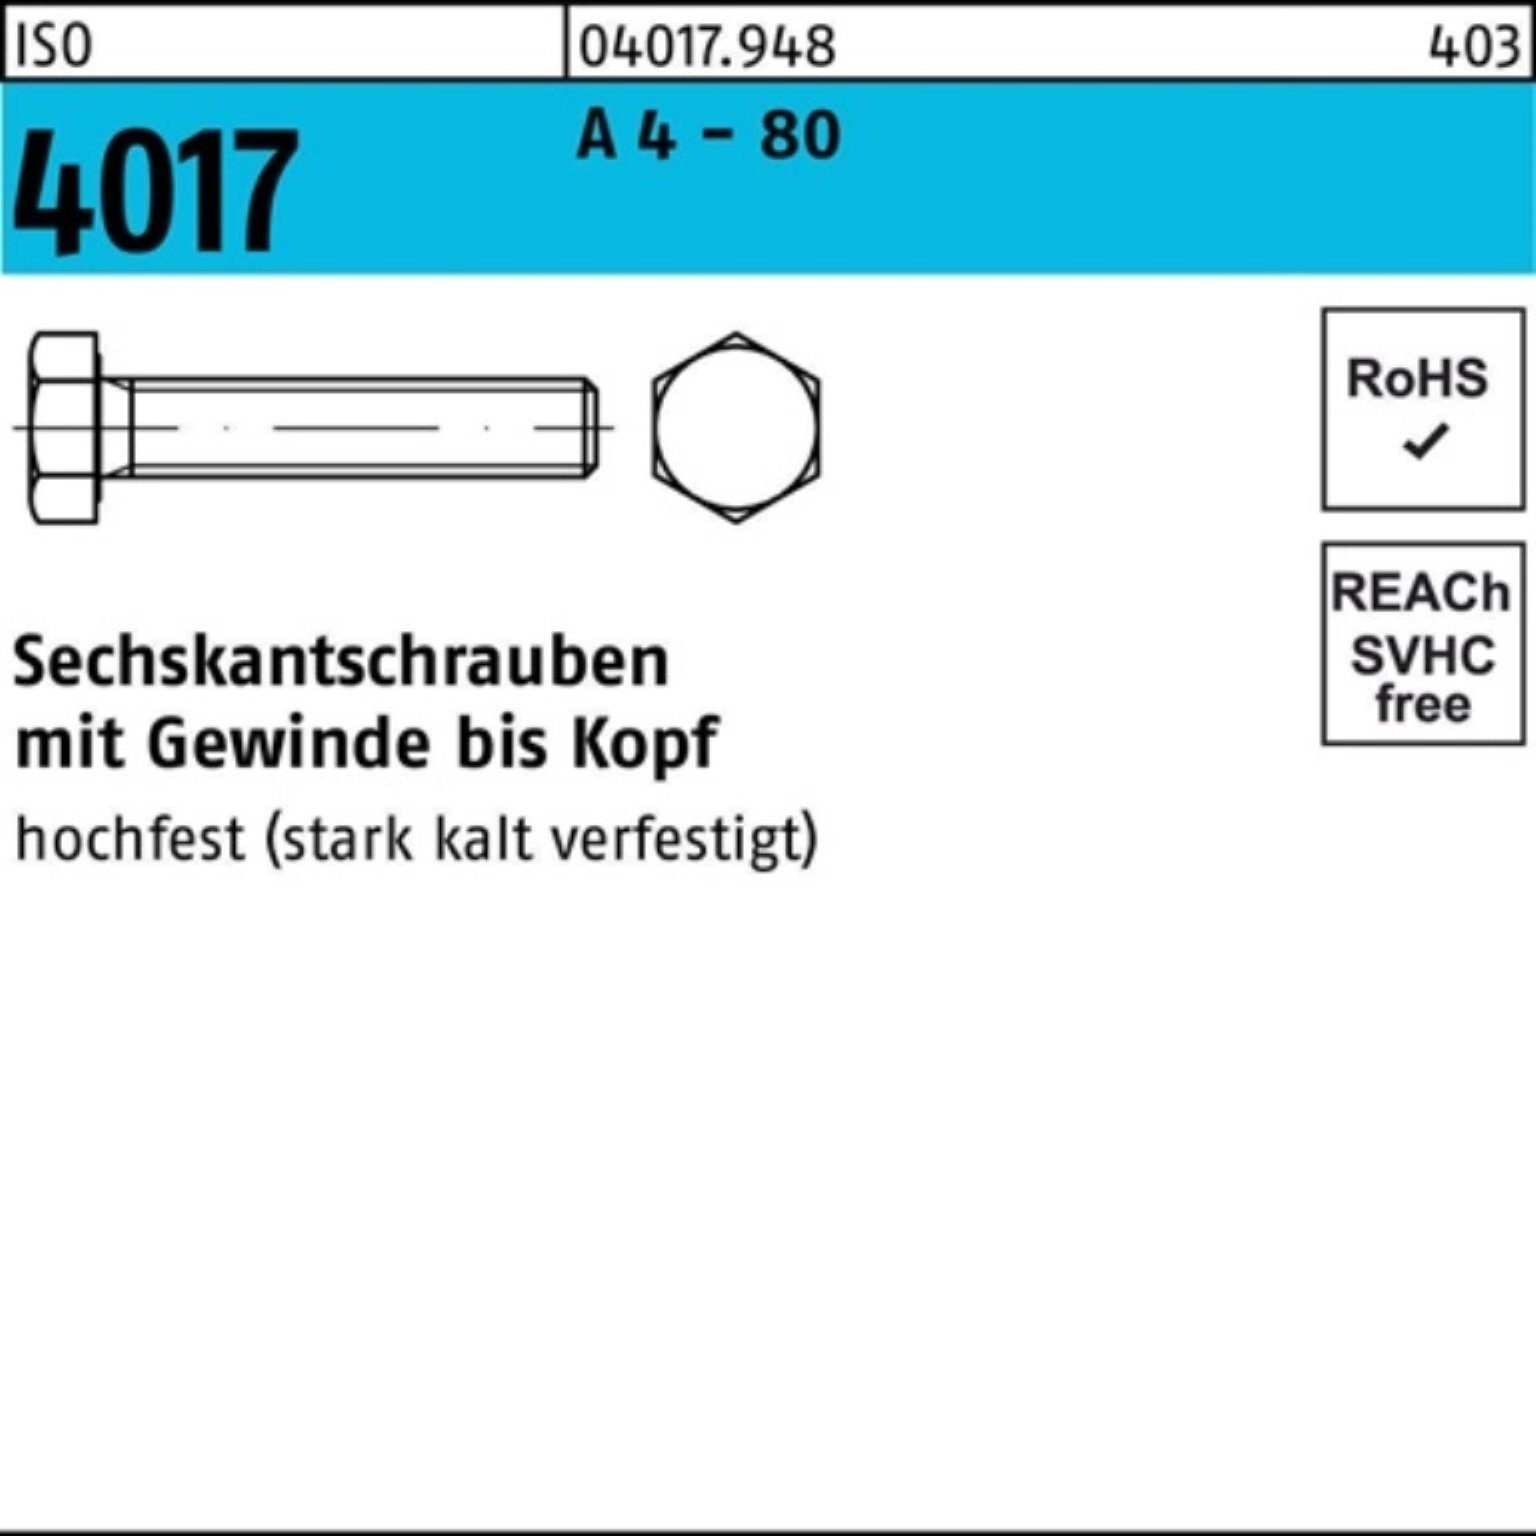 Bufab Sechskantschraube 100er Pack Sechskantschraube ISO 4017 VG M6x 30 A 4 - 80 100 Stück IS